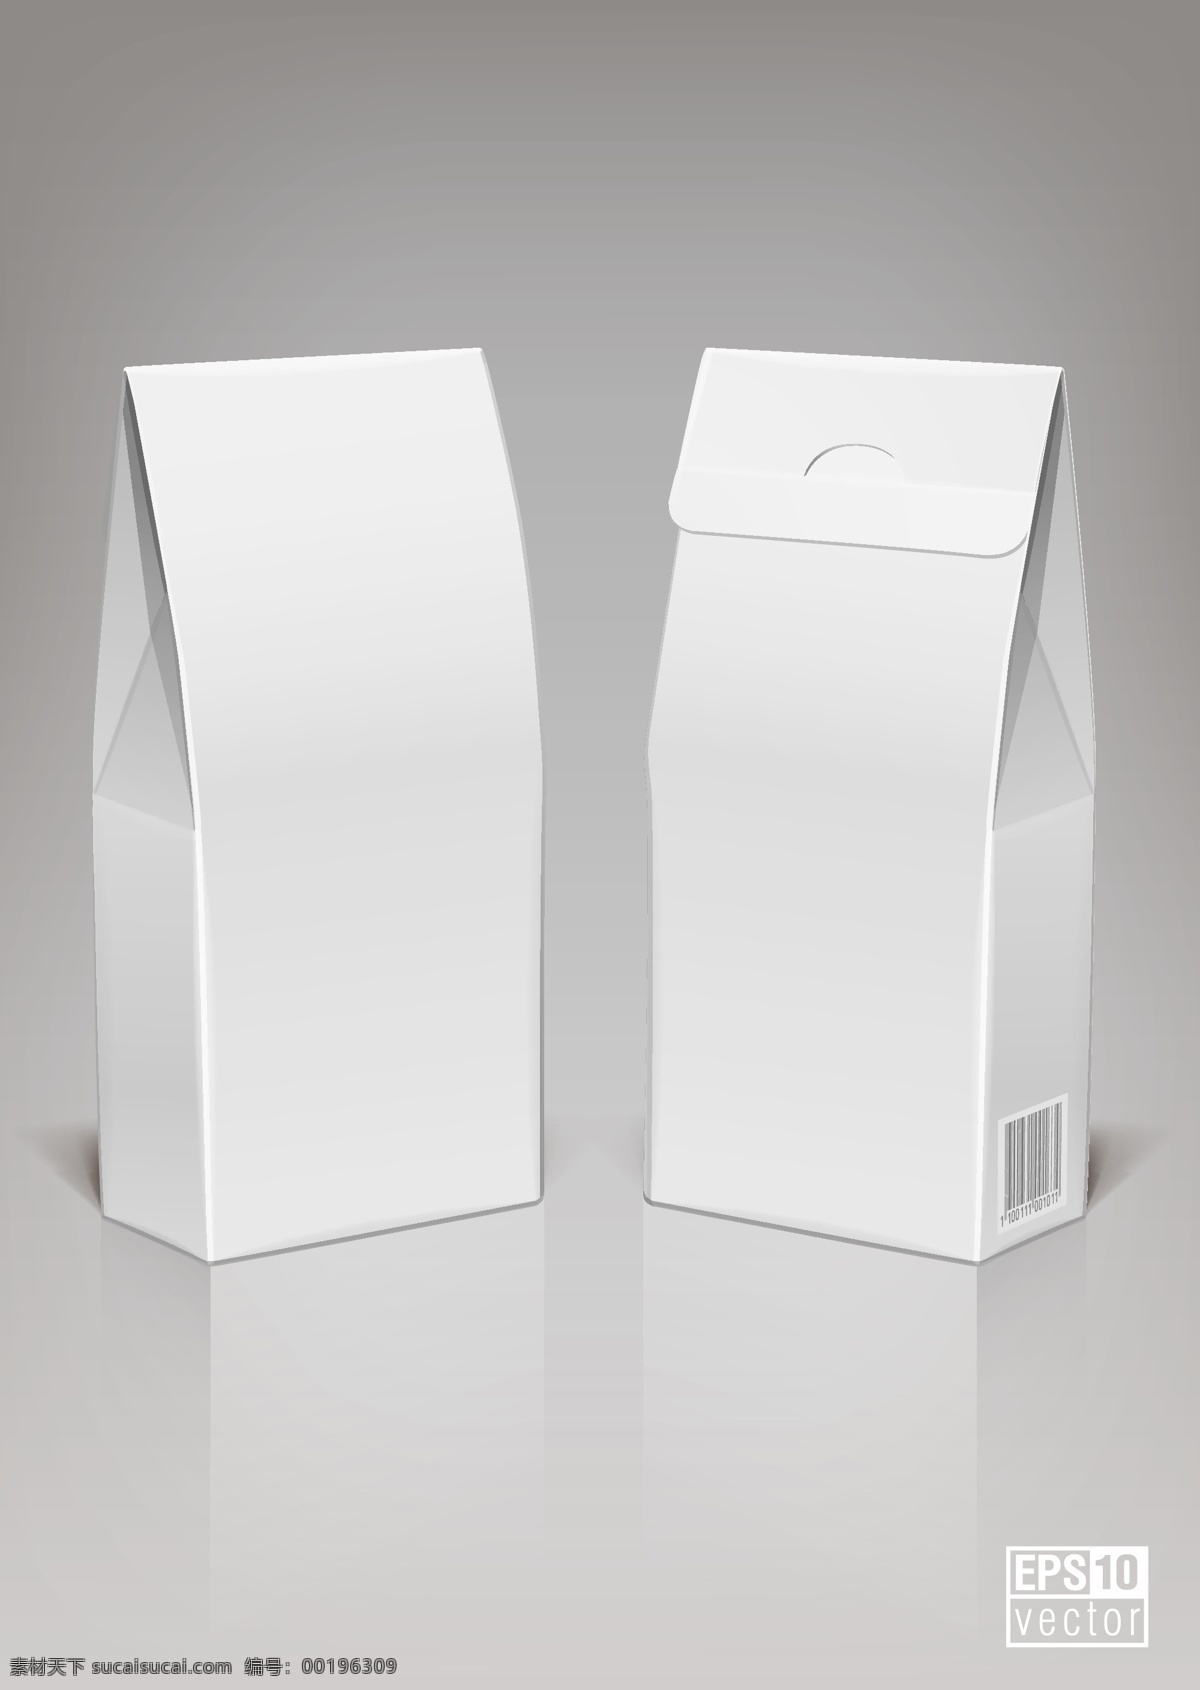 盒 包装 包装盒 包装盒3 eps向量3 免费 矢量 包装盒3向量 包装盒矢量 白色